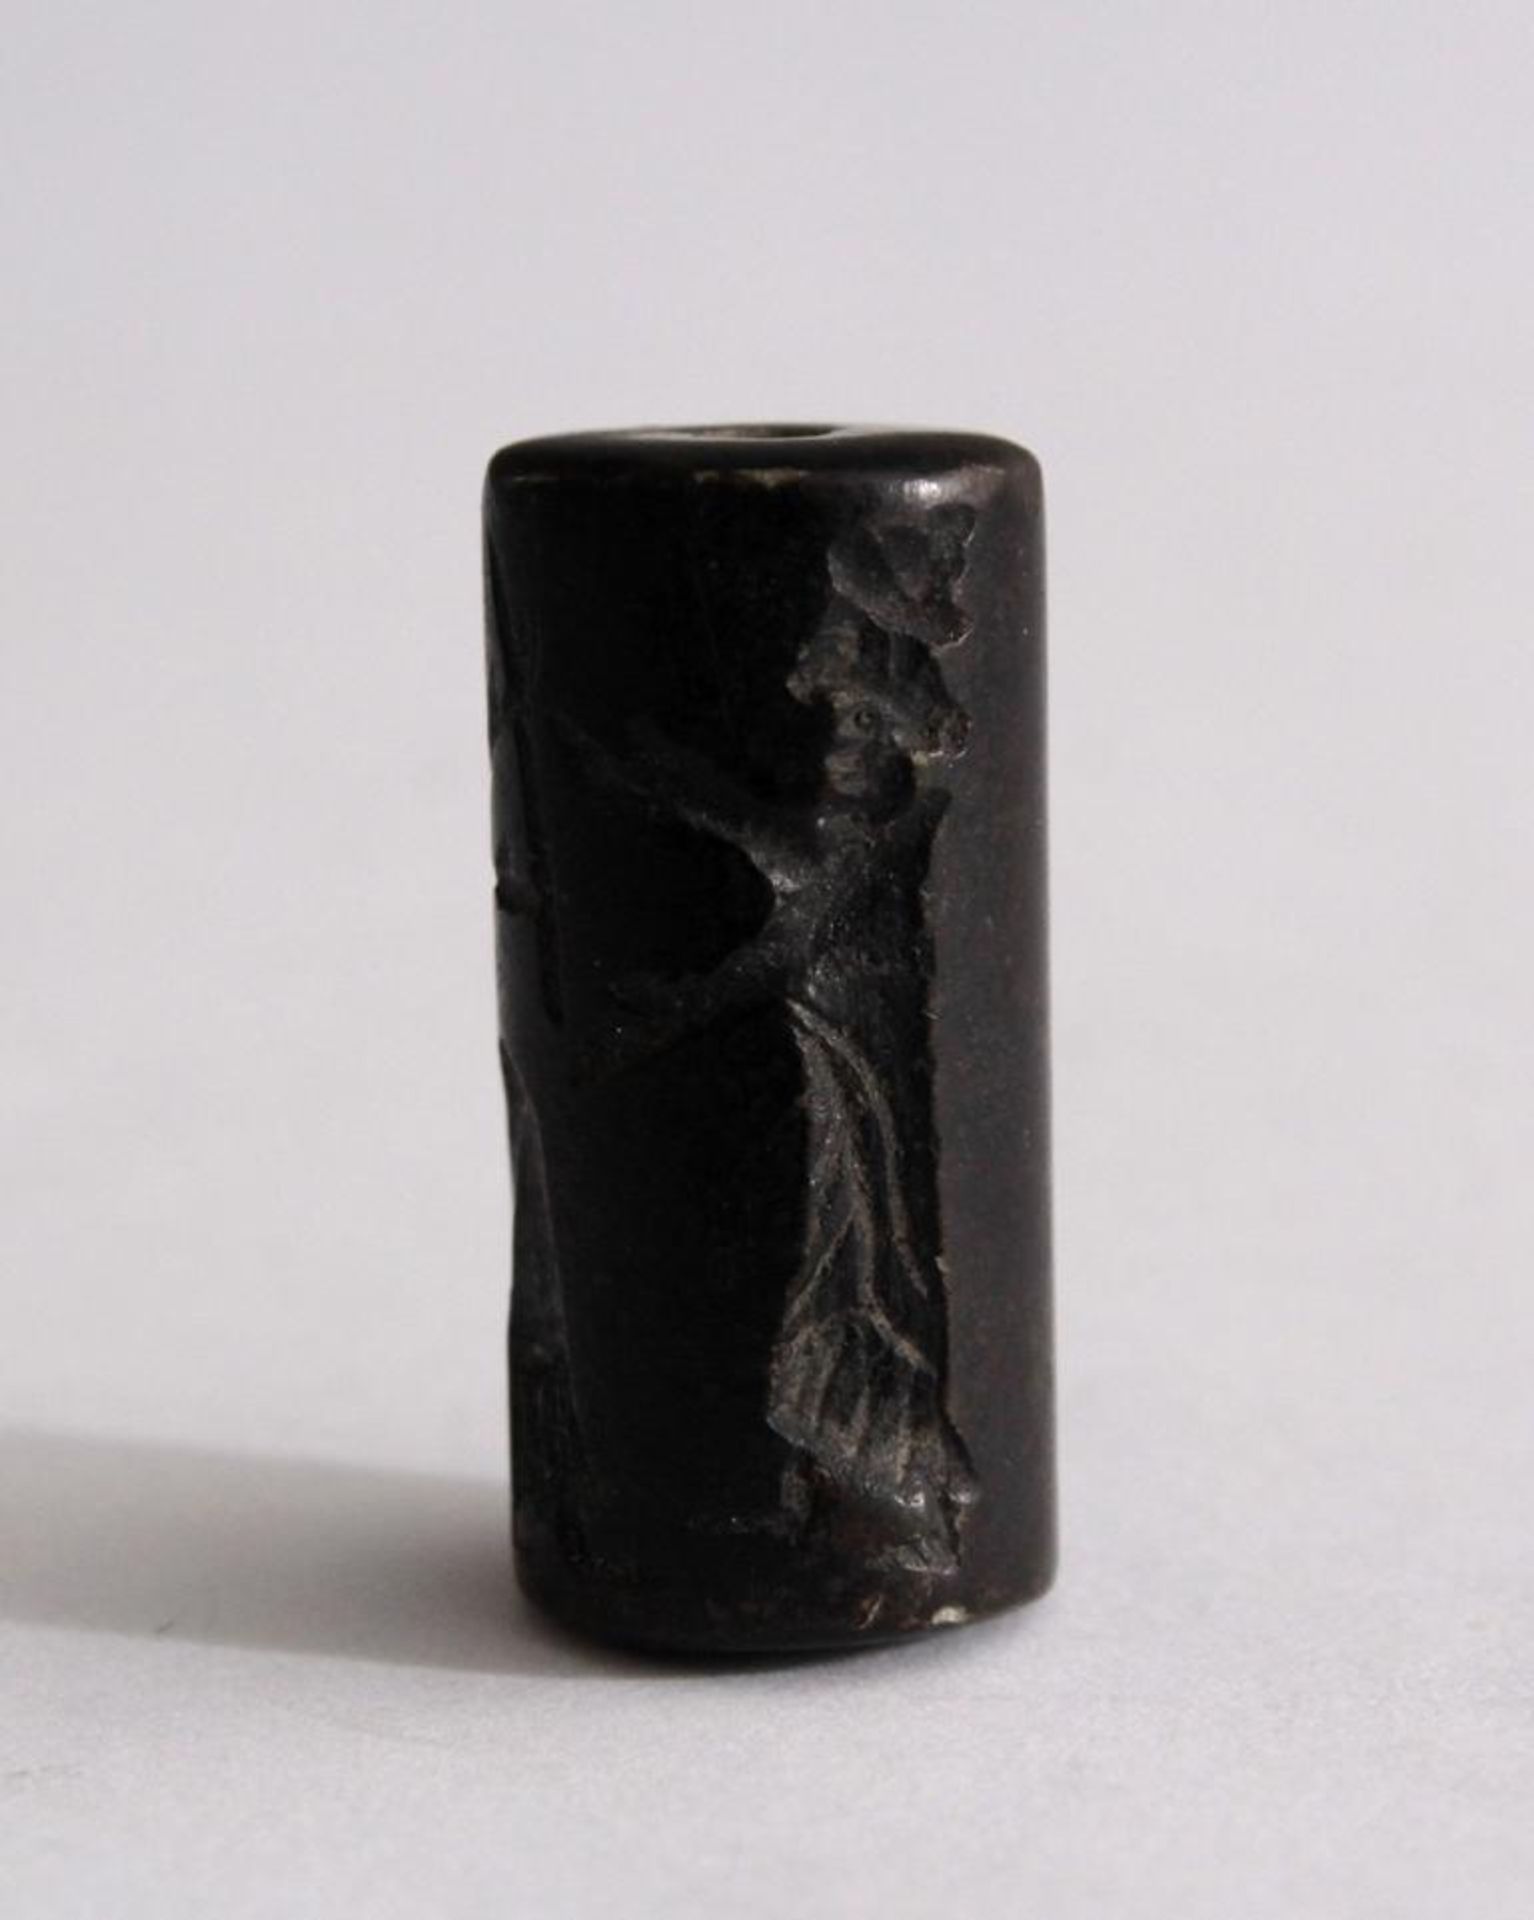 Tibetische Dzi PerleAus Stein gefertigt, durchbohrt, umlaufend geschnitzt, ca. Länge 3 cm, - Bild 2 aus 3